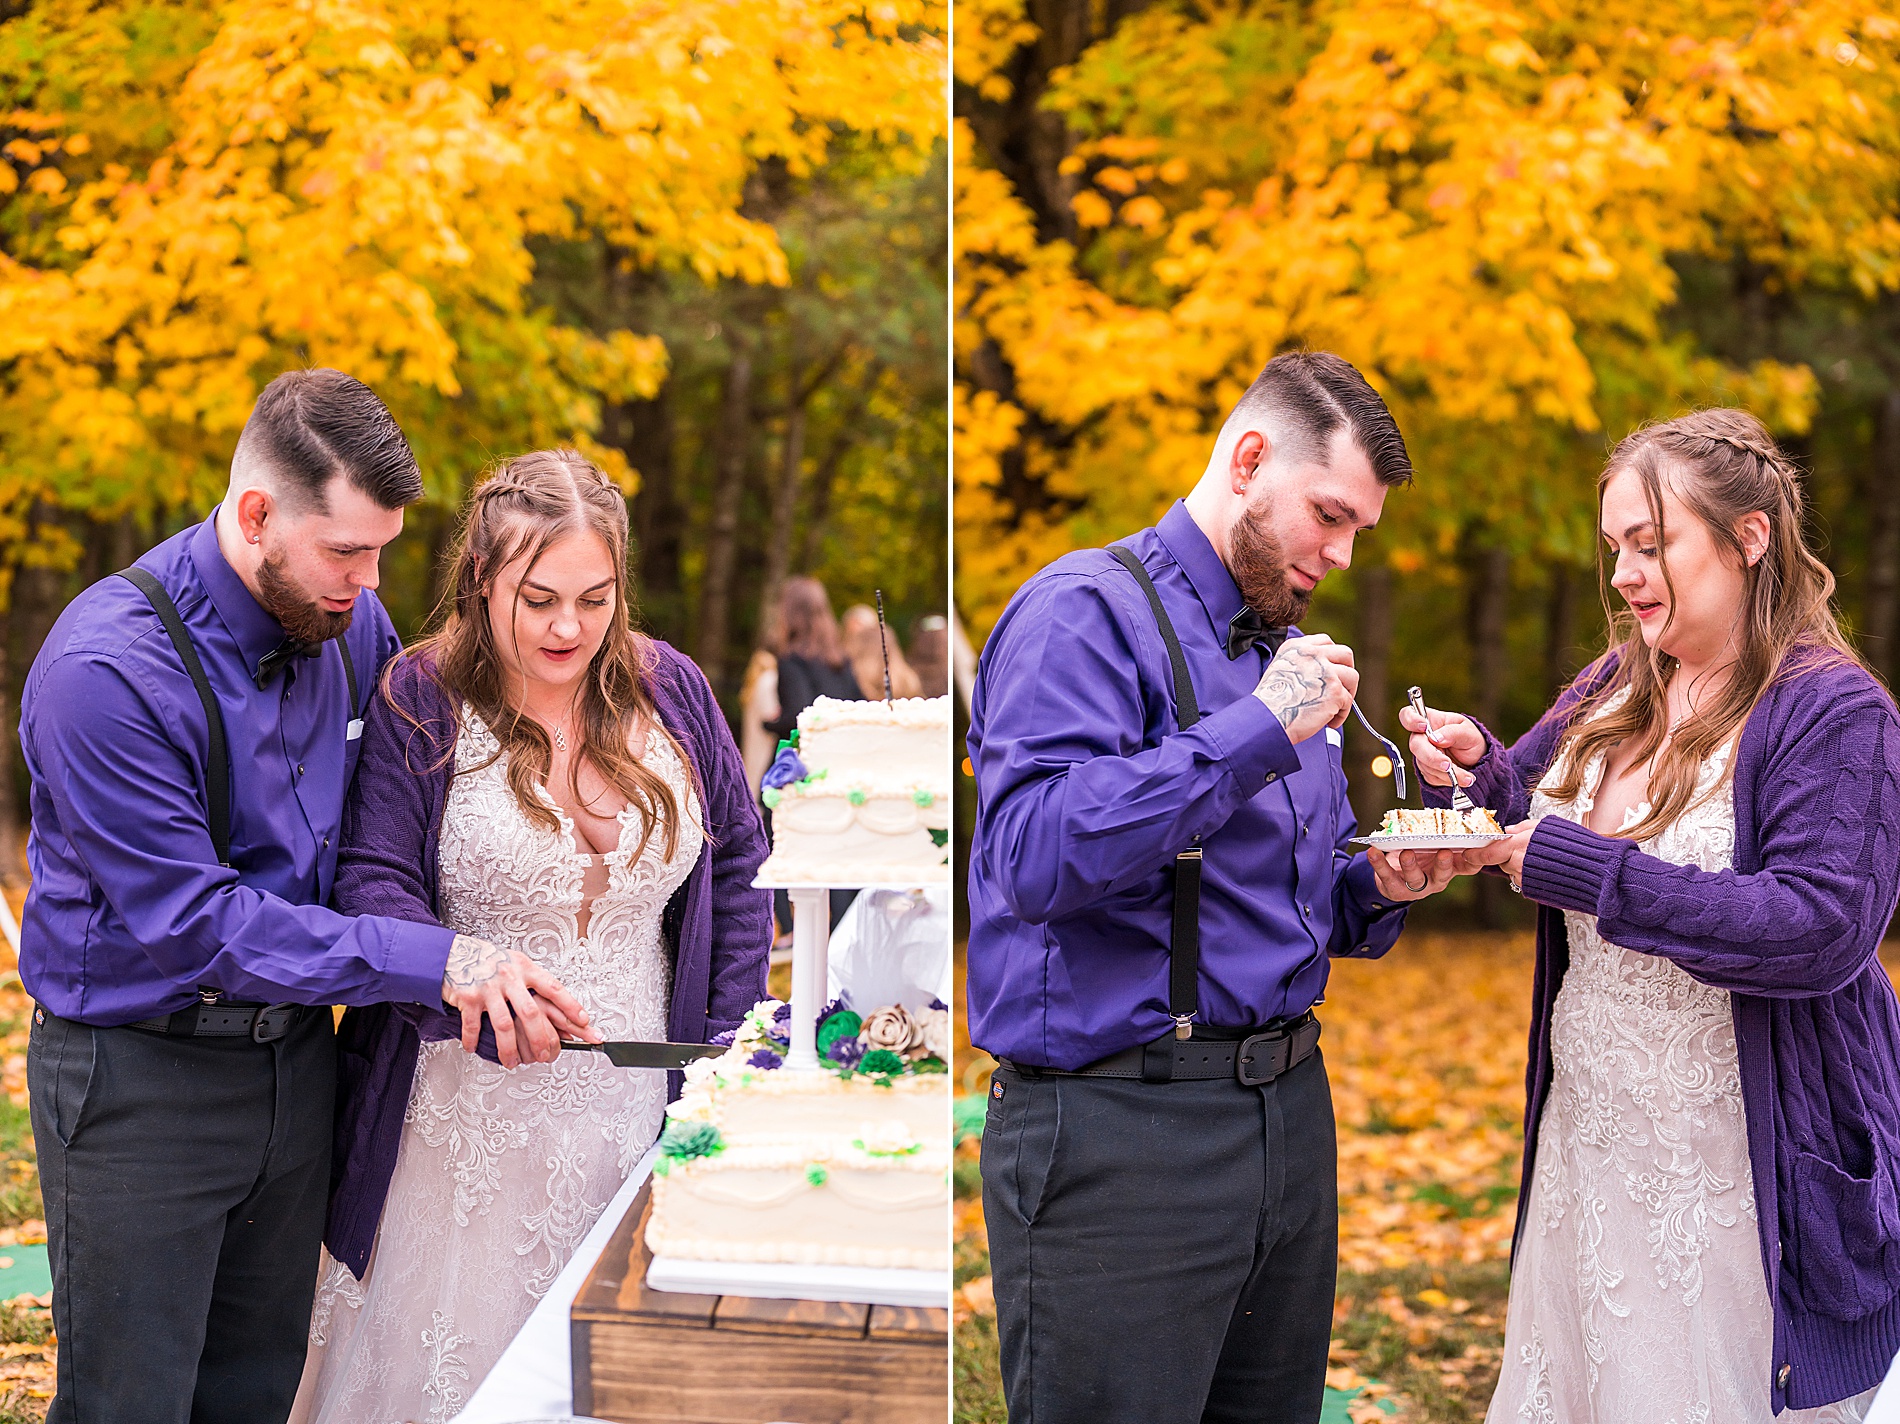 newlyweds cut their cake